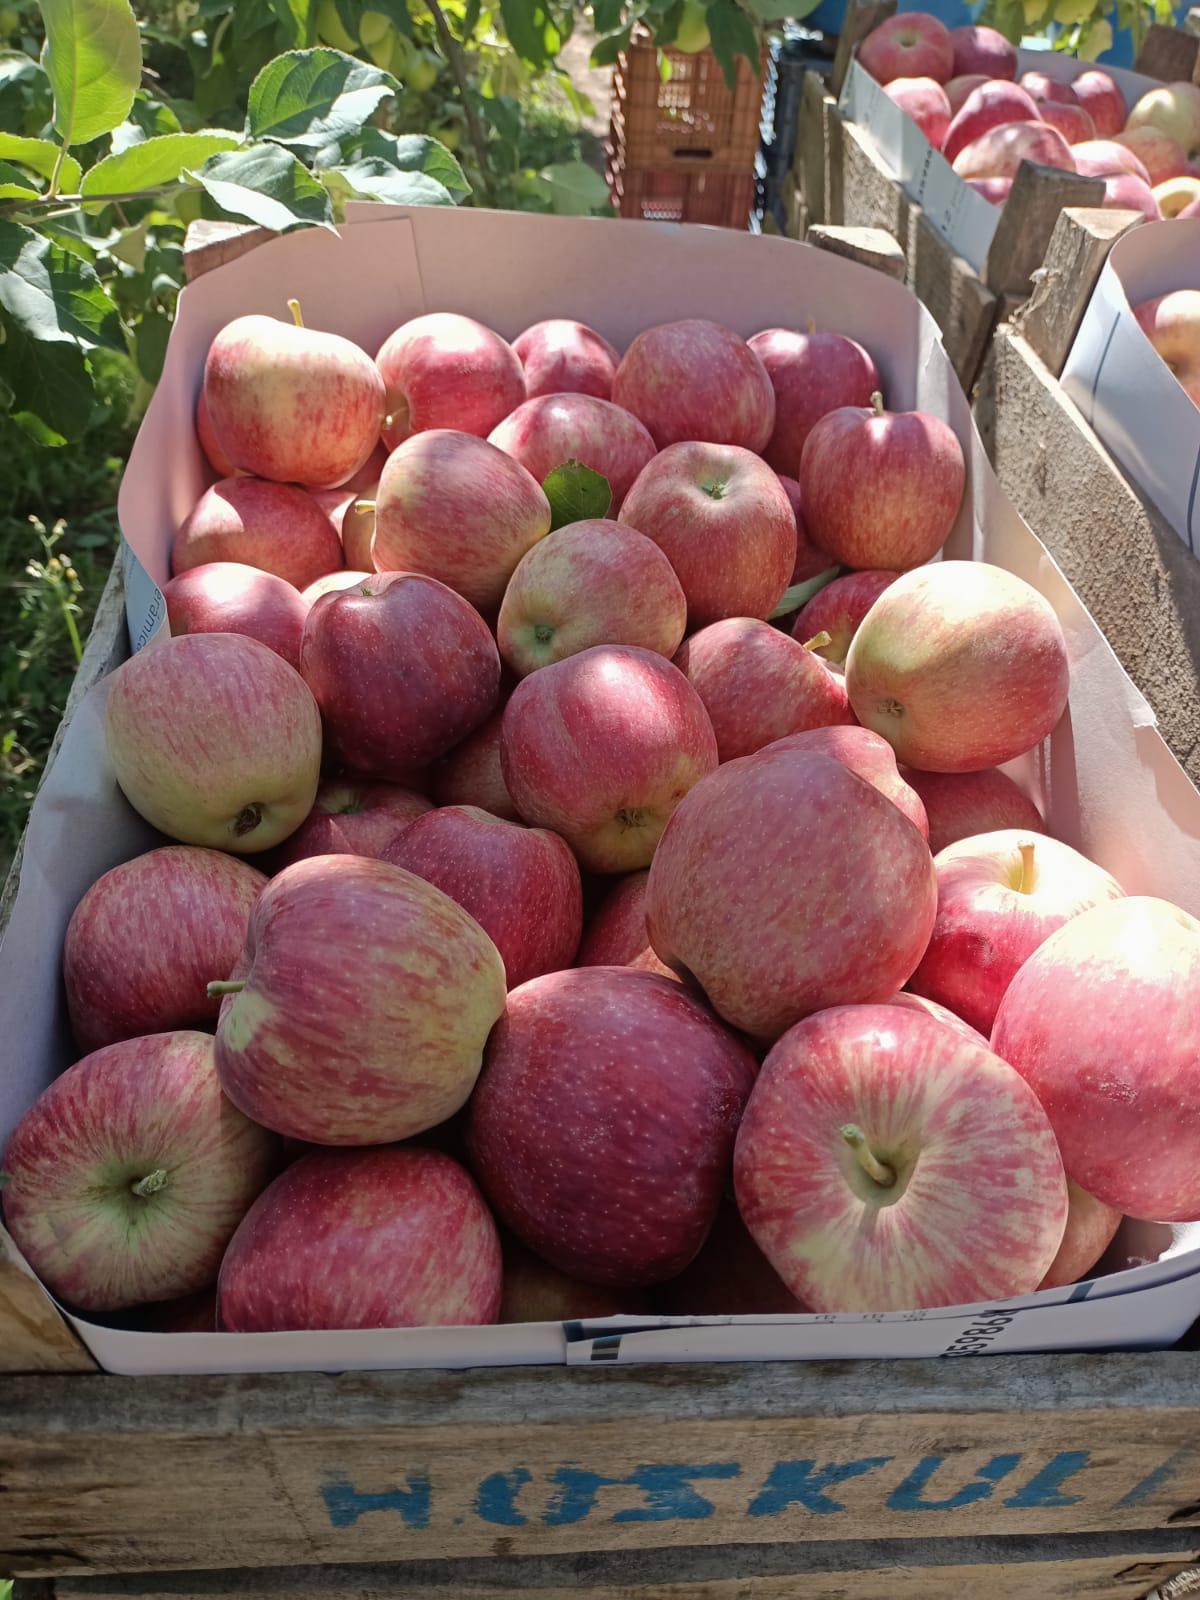 Elma - Harun Genç tarafından verilen satılık elma ilanını ve diğer satılık elma ilanlarını tarimziraat.com adresinde bulabilirsiniz